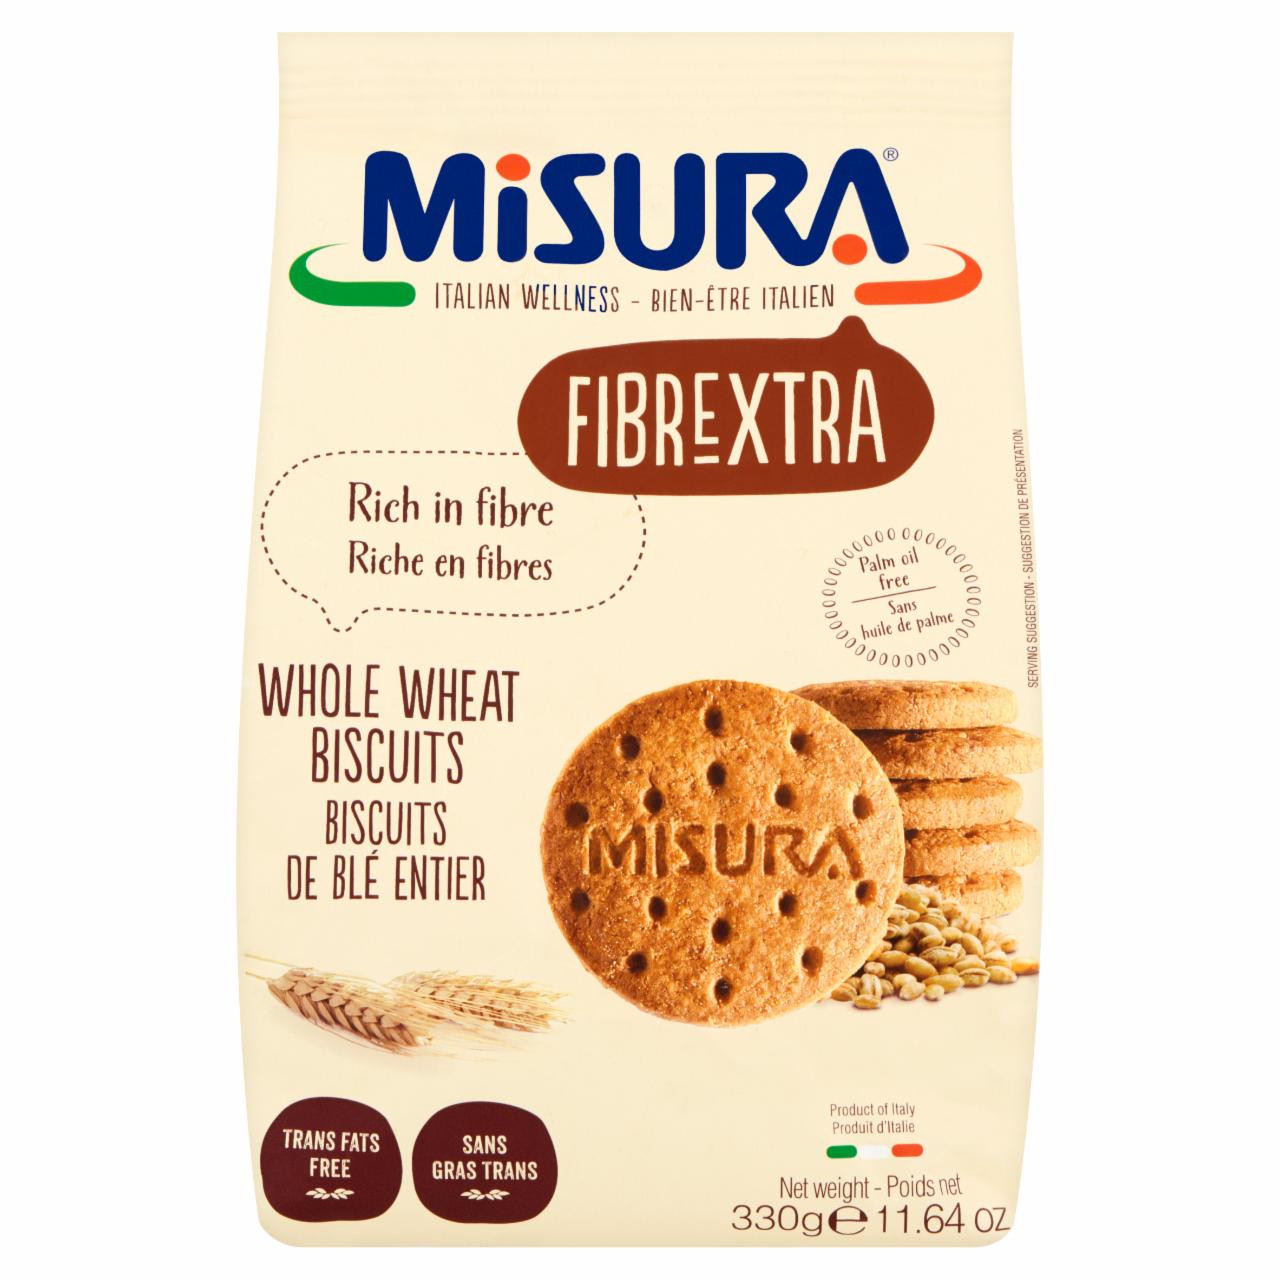 Fotografie - Fibrextra Biscotti Integrali Farina 100% Integrale Misura